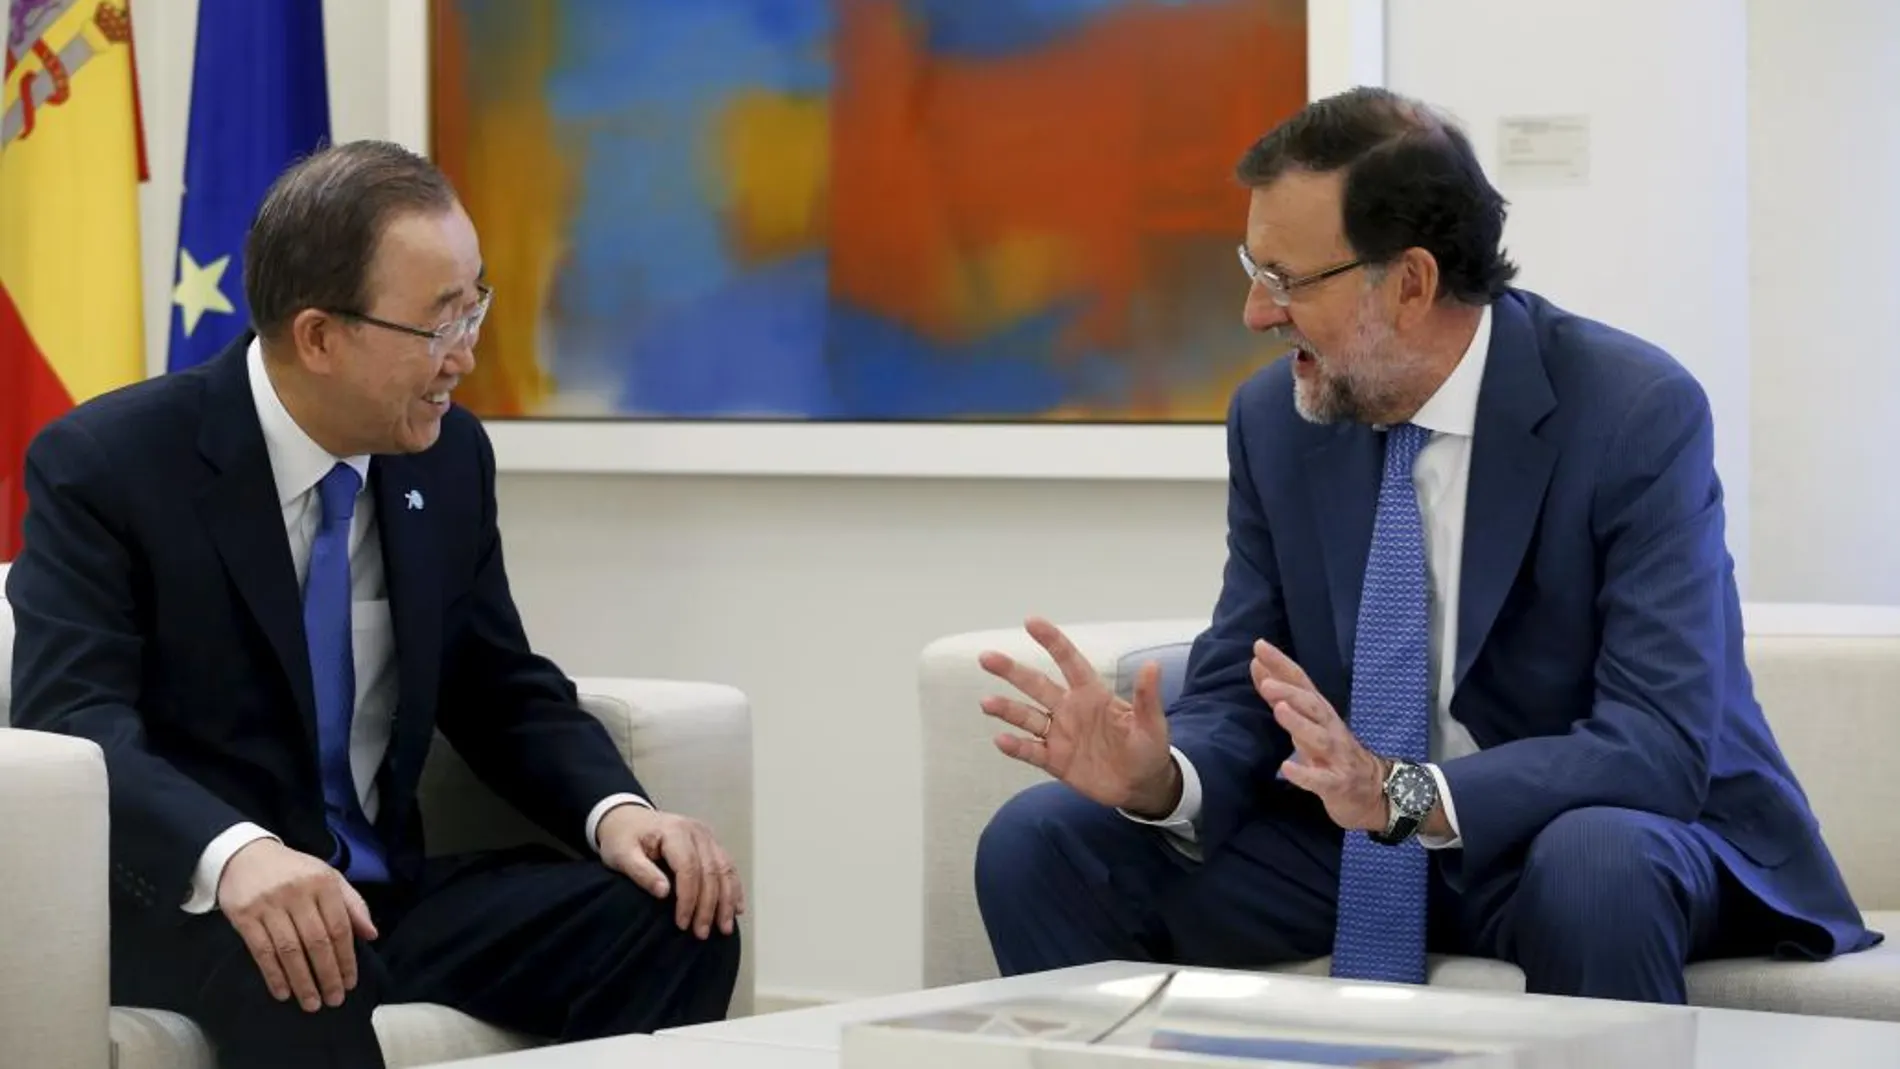 El presidente del Gobierno, Mariano Rajoy, ha recibido este miércoles en el Palacio de la Moncloa al secretario general de Naciones Unidas, Ban Ki Moon